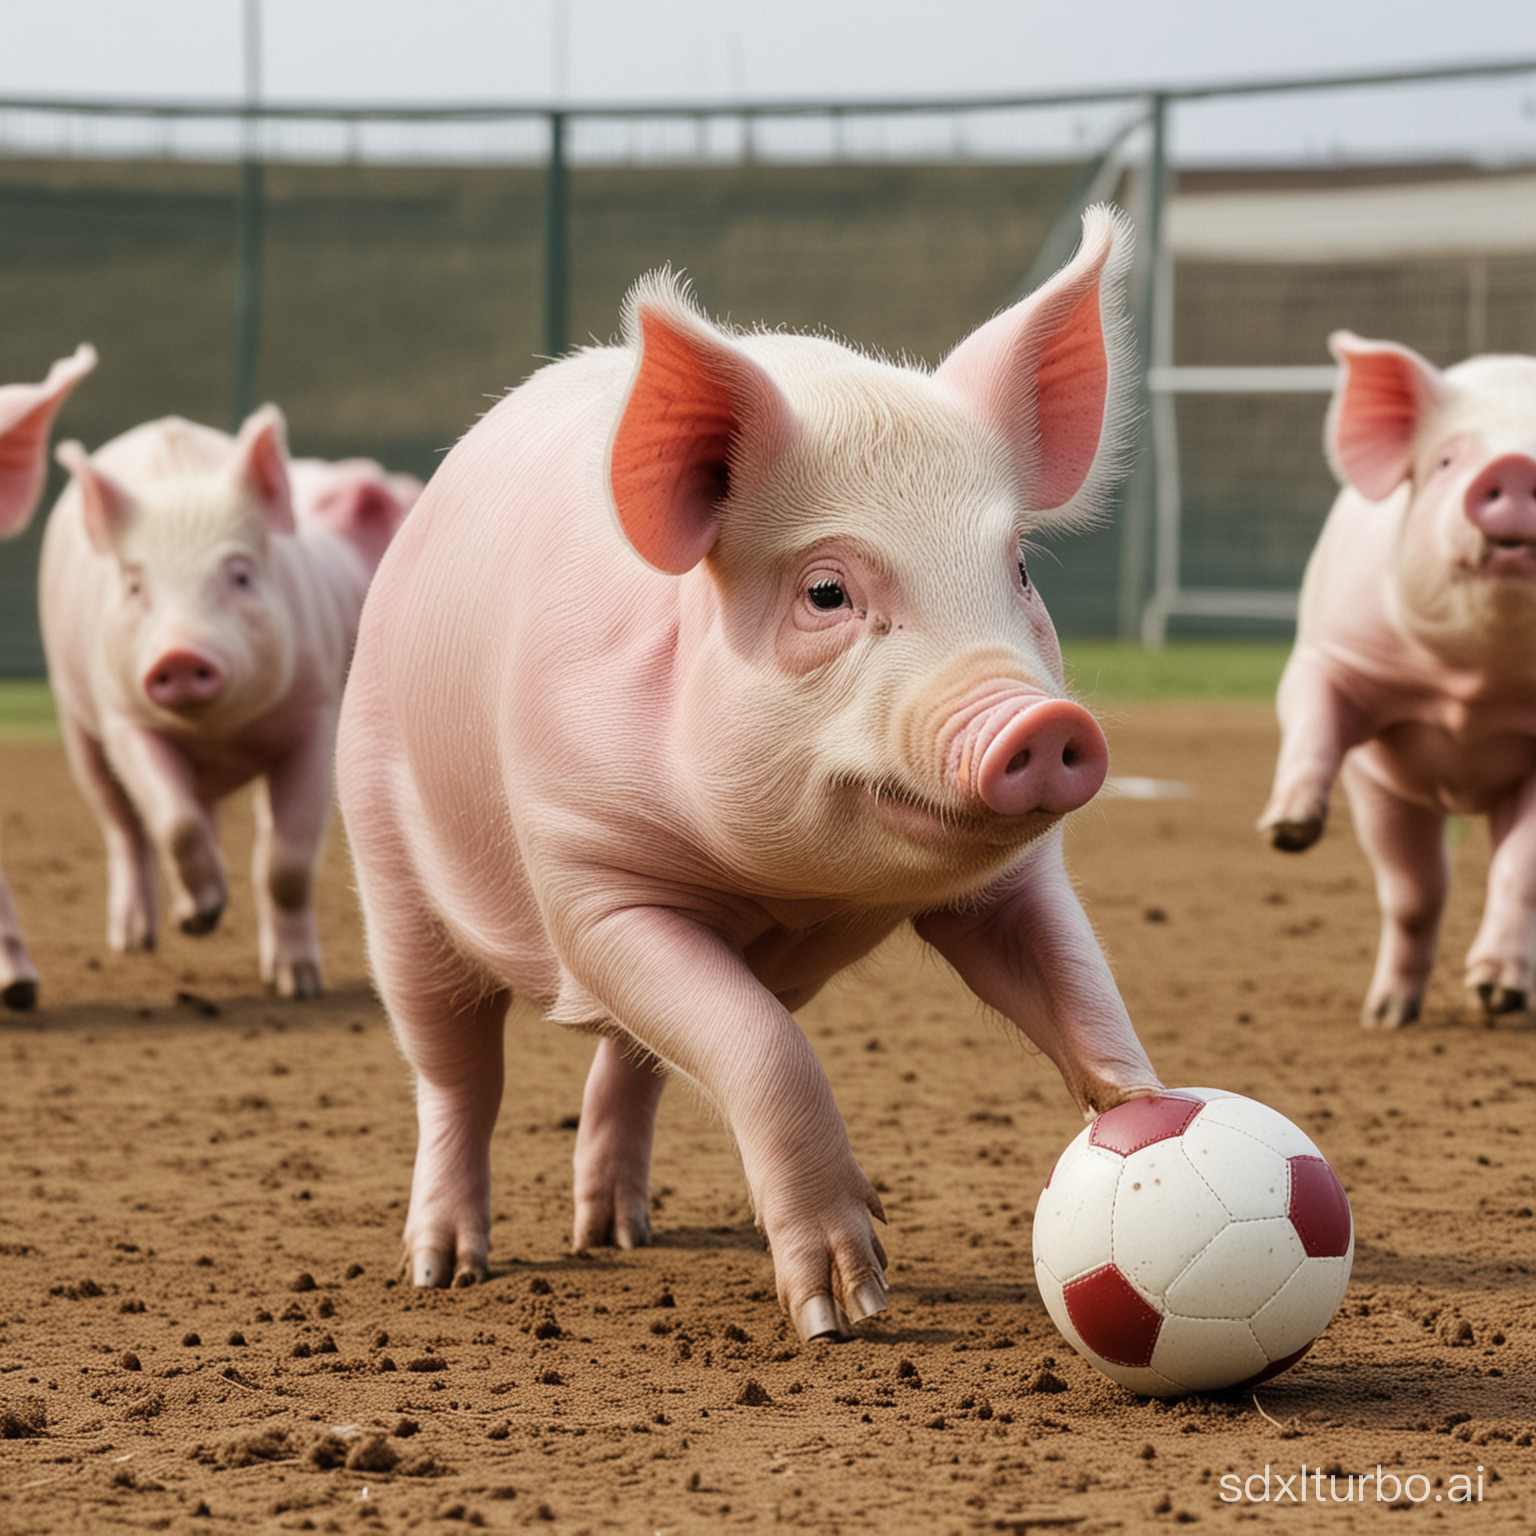 pig play foot ball